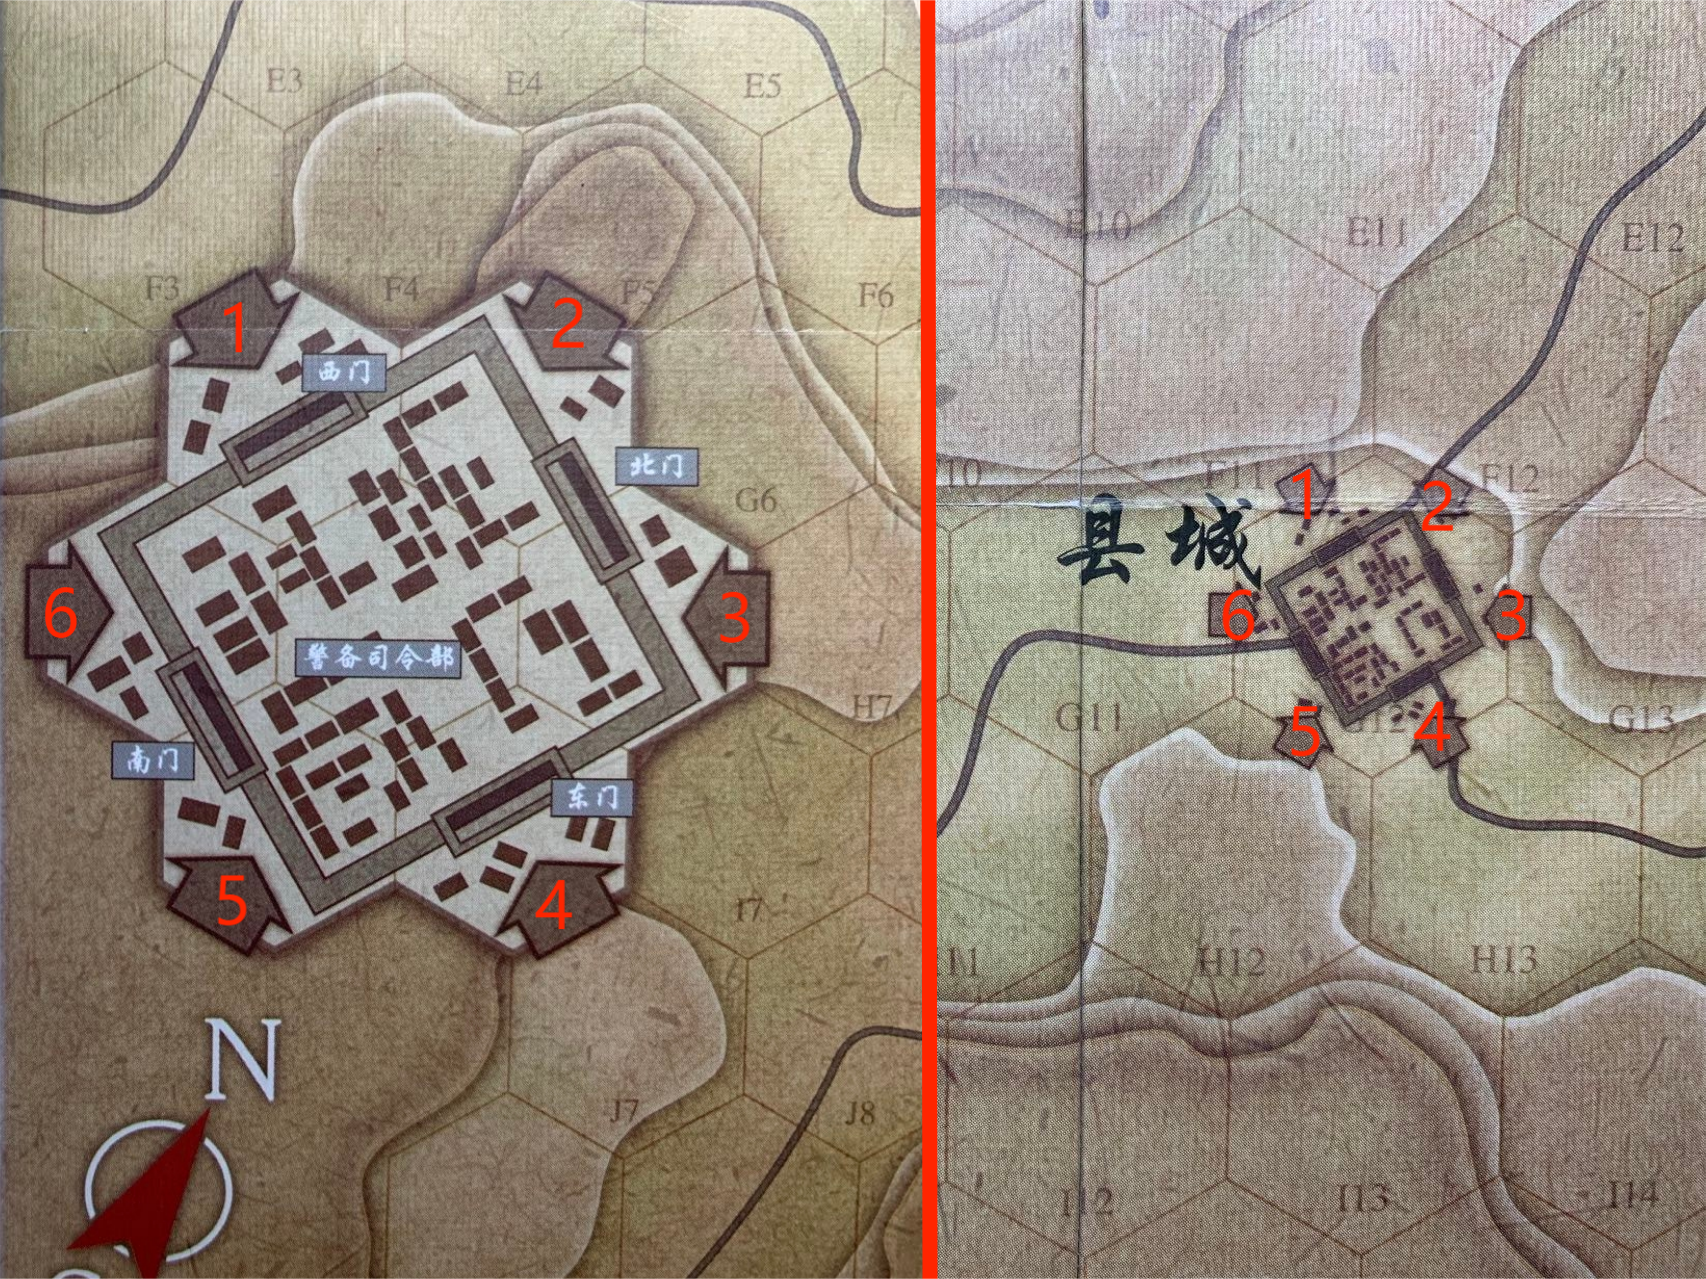 版圖設計上，通過六個單向箭頭提示玩家進出縣城時，大小地圖之間的相對位置關係，即只能從圖中同樣編號的箭頭進出